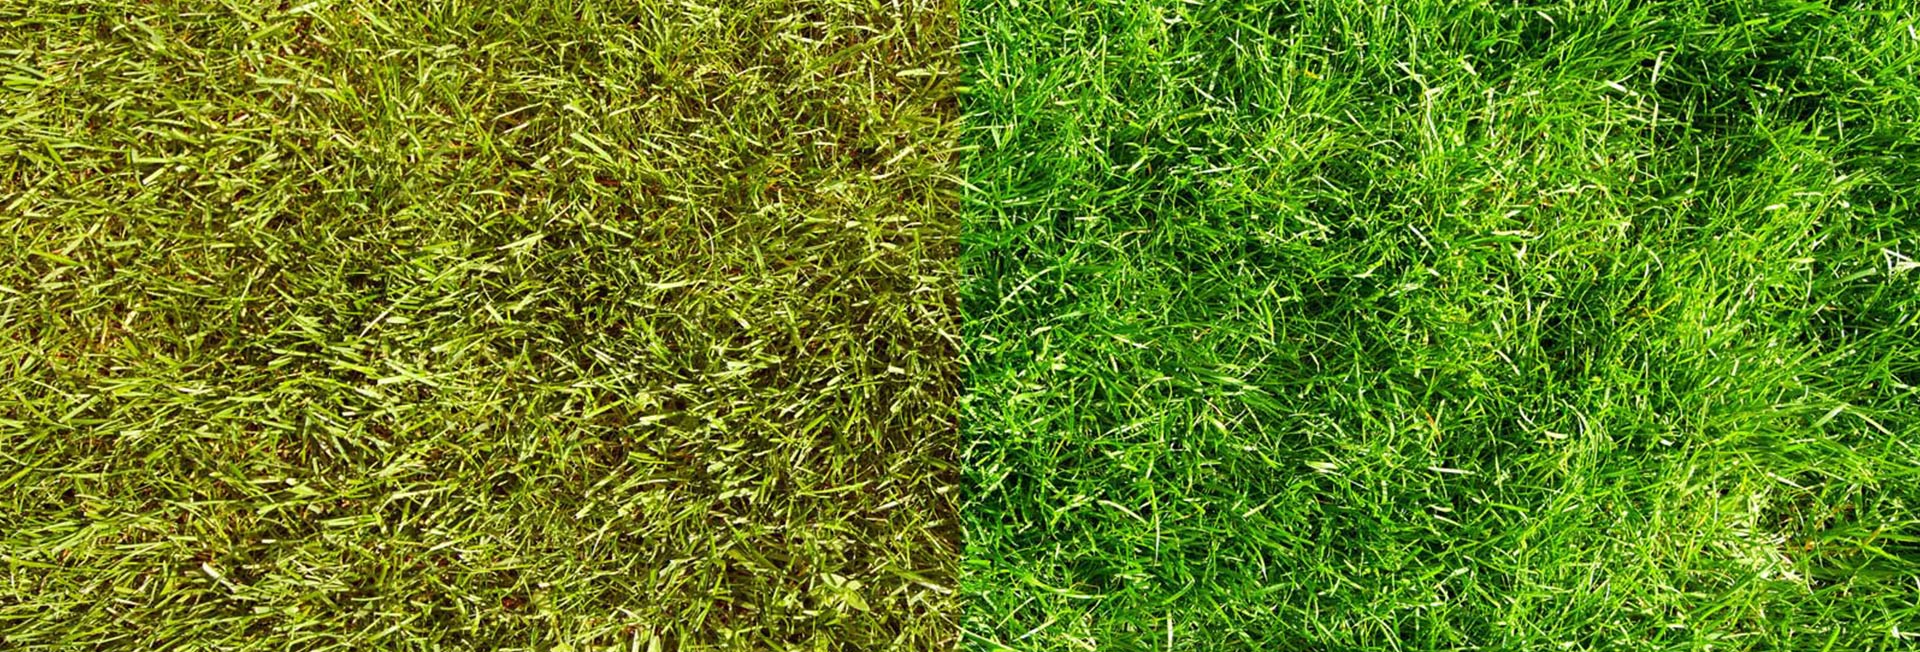 Jak uzyskać zieloną trawę: Wskazówki dotyczące utrzymania trawnika